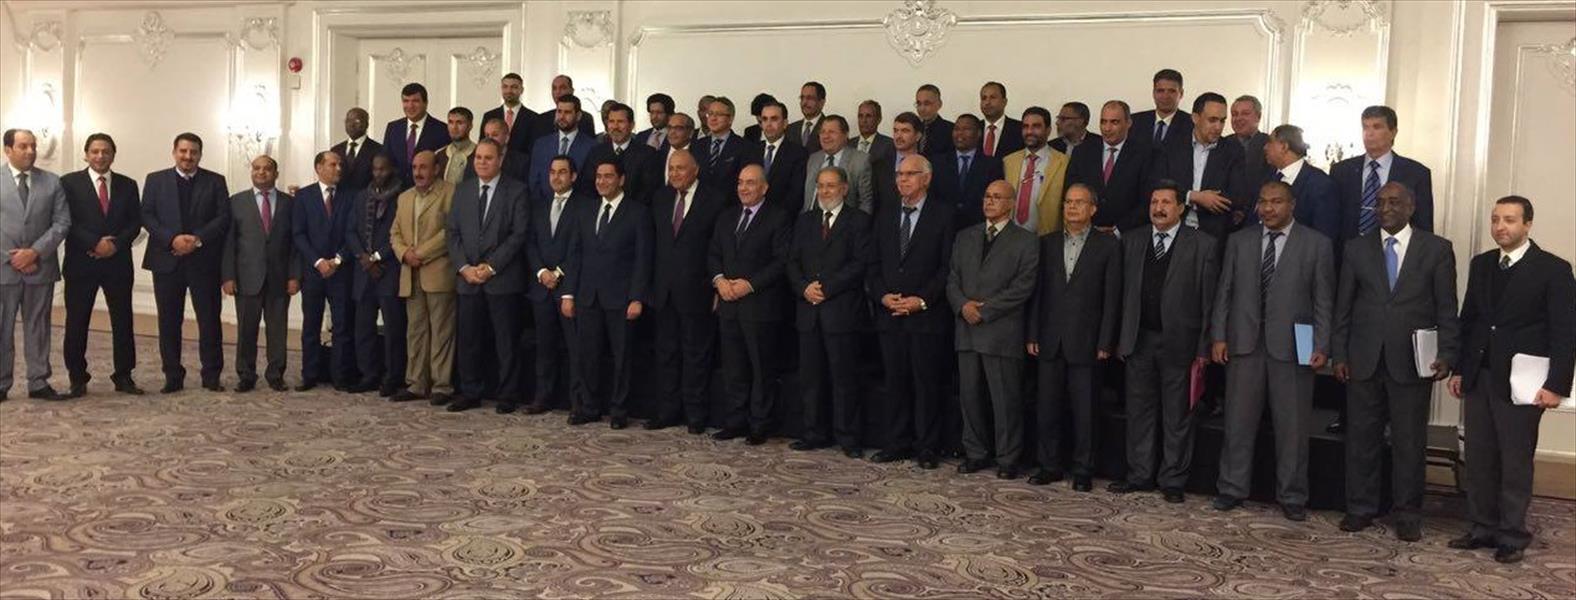 وفد من 16 شخصية سياسية بمصراتة يبدأ زيارة إلى القاهرة لبحث الأزمة الليبية